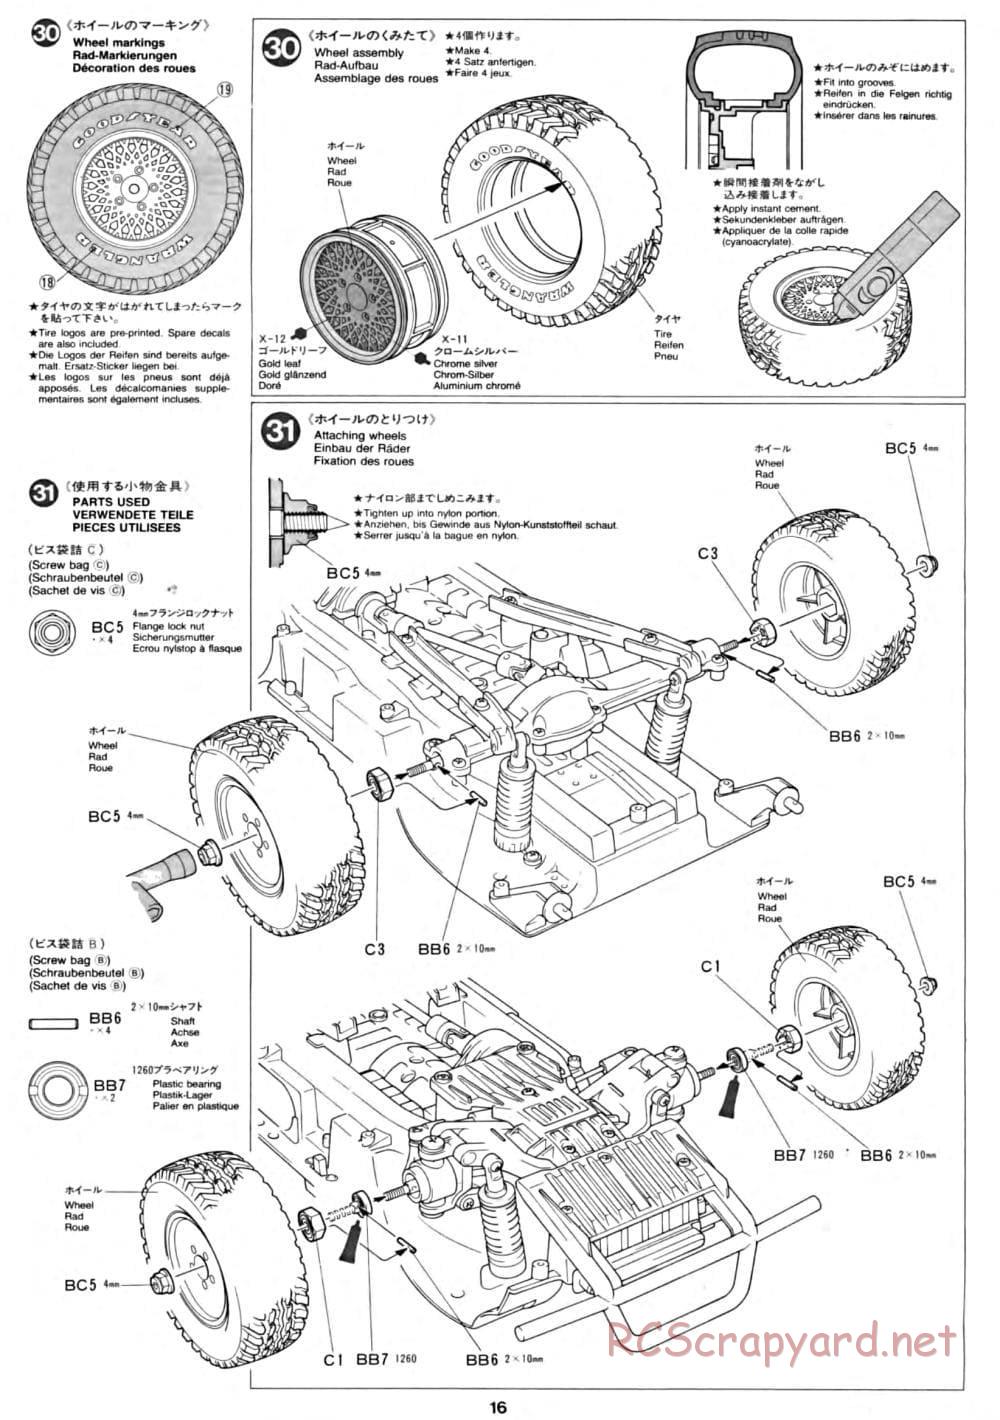 Tamiya - CC-01 Chassis - Manual - Page 16